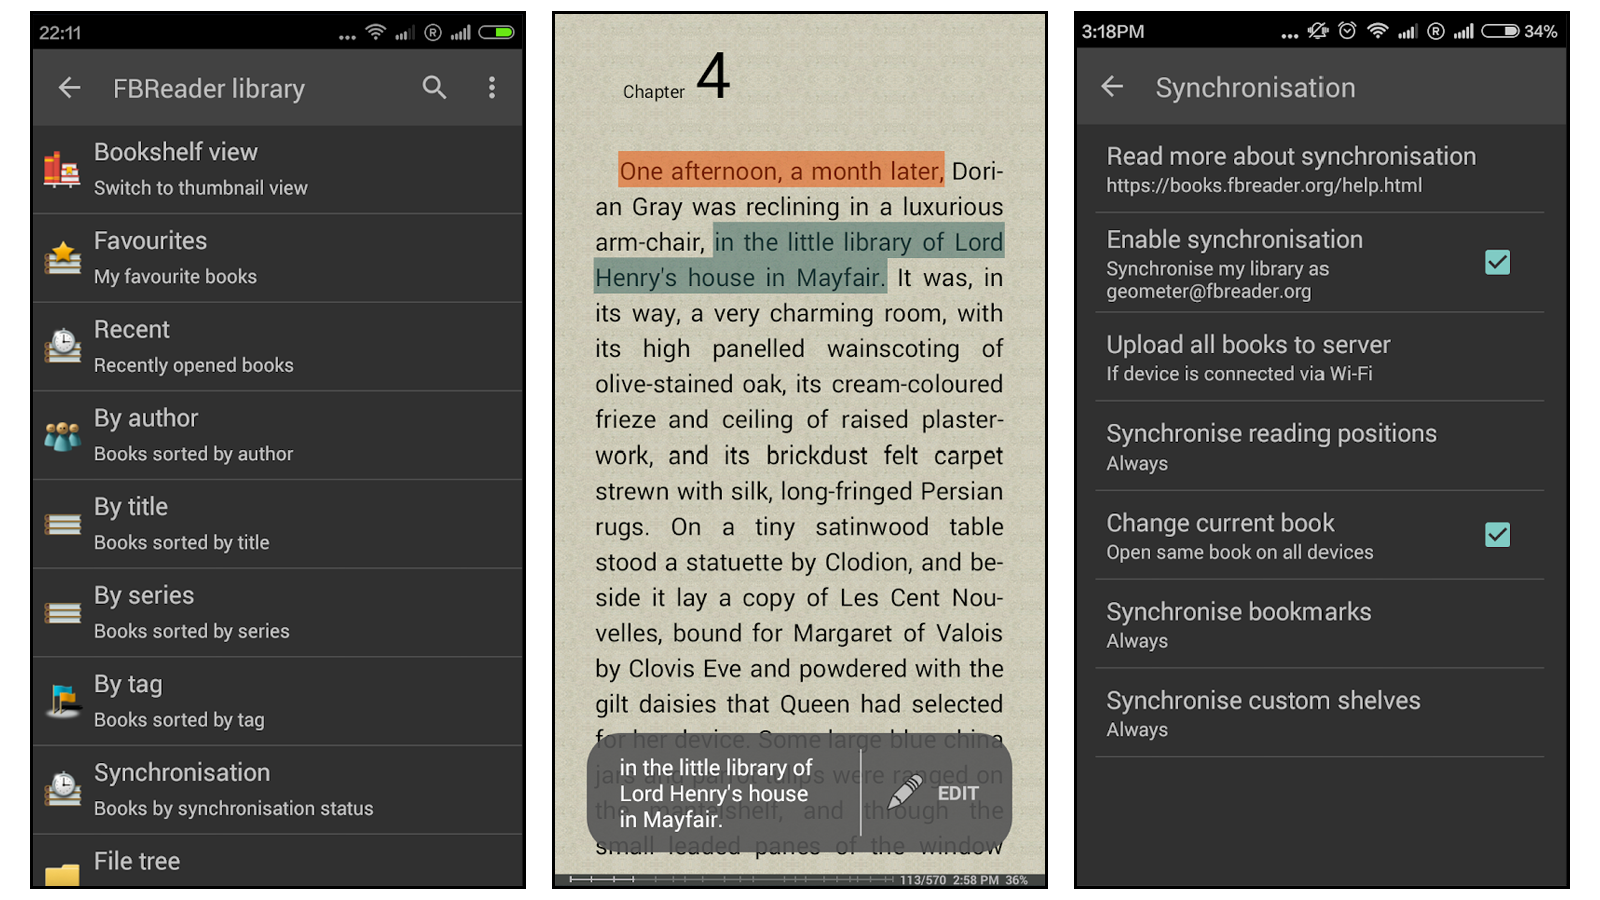 FBReader best book reading app for uploading your own books